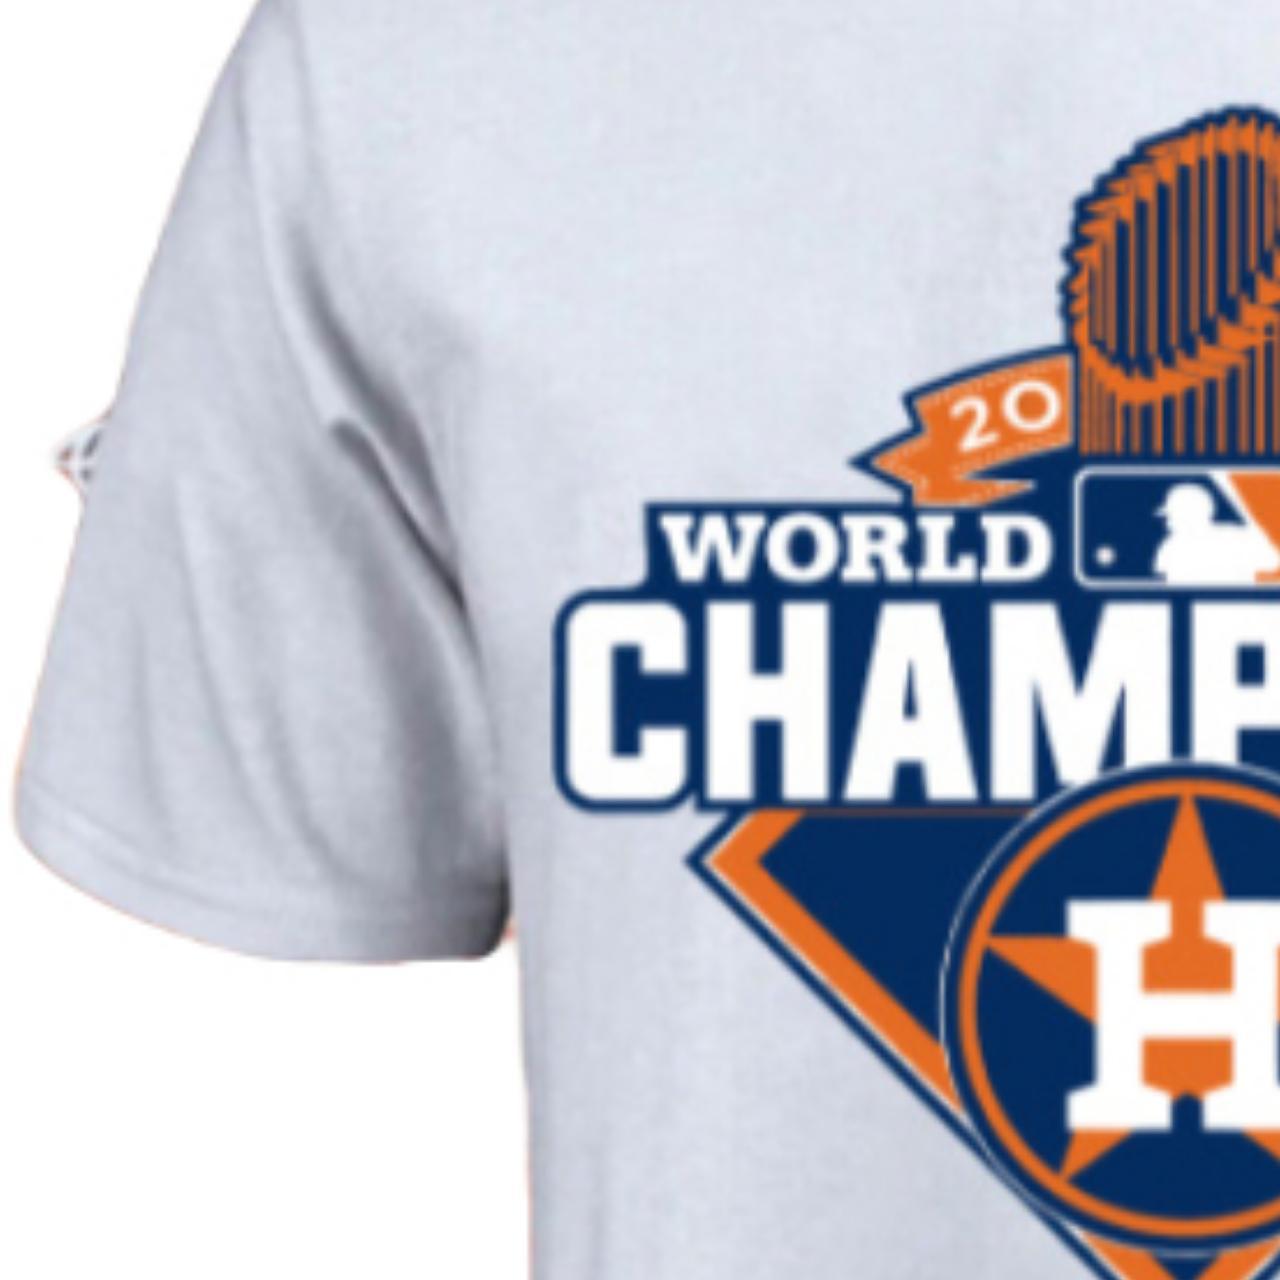 2022 Astros World Series shirt ! Got as a gift - Depop